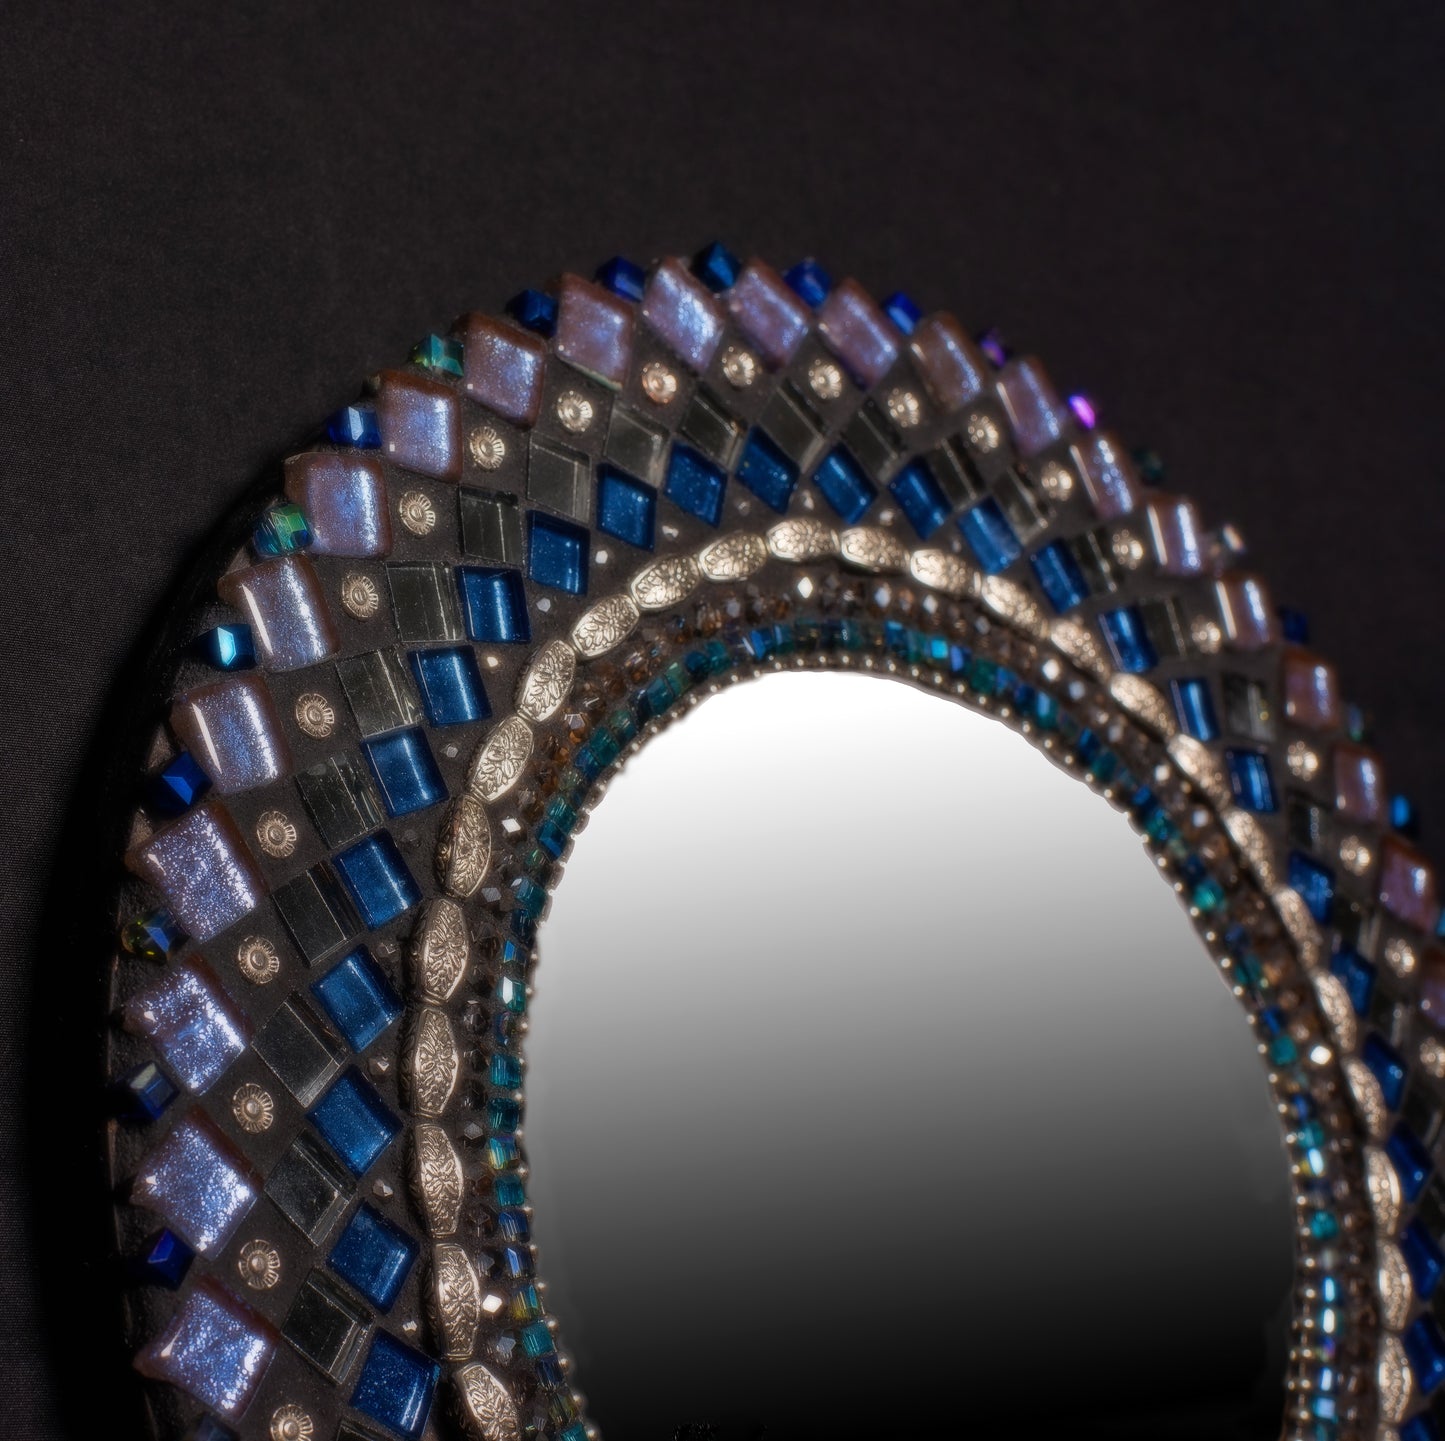 Blue Moon 10-inch Mosaic Mirror